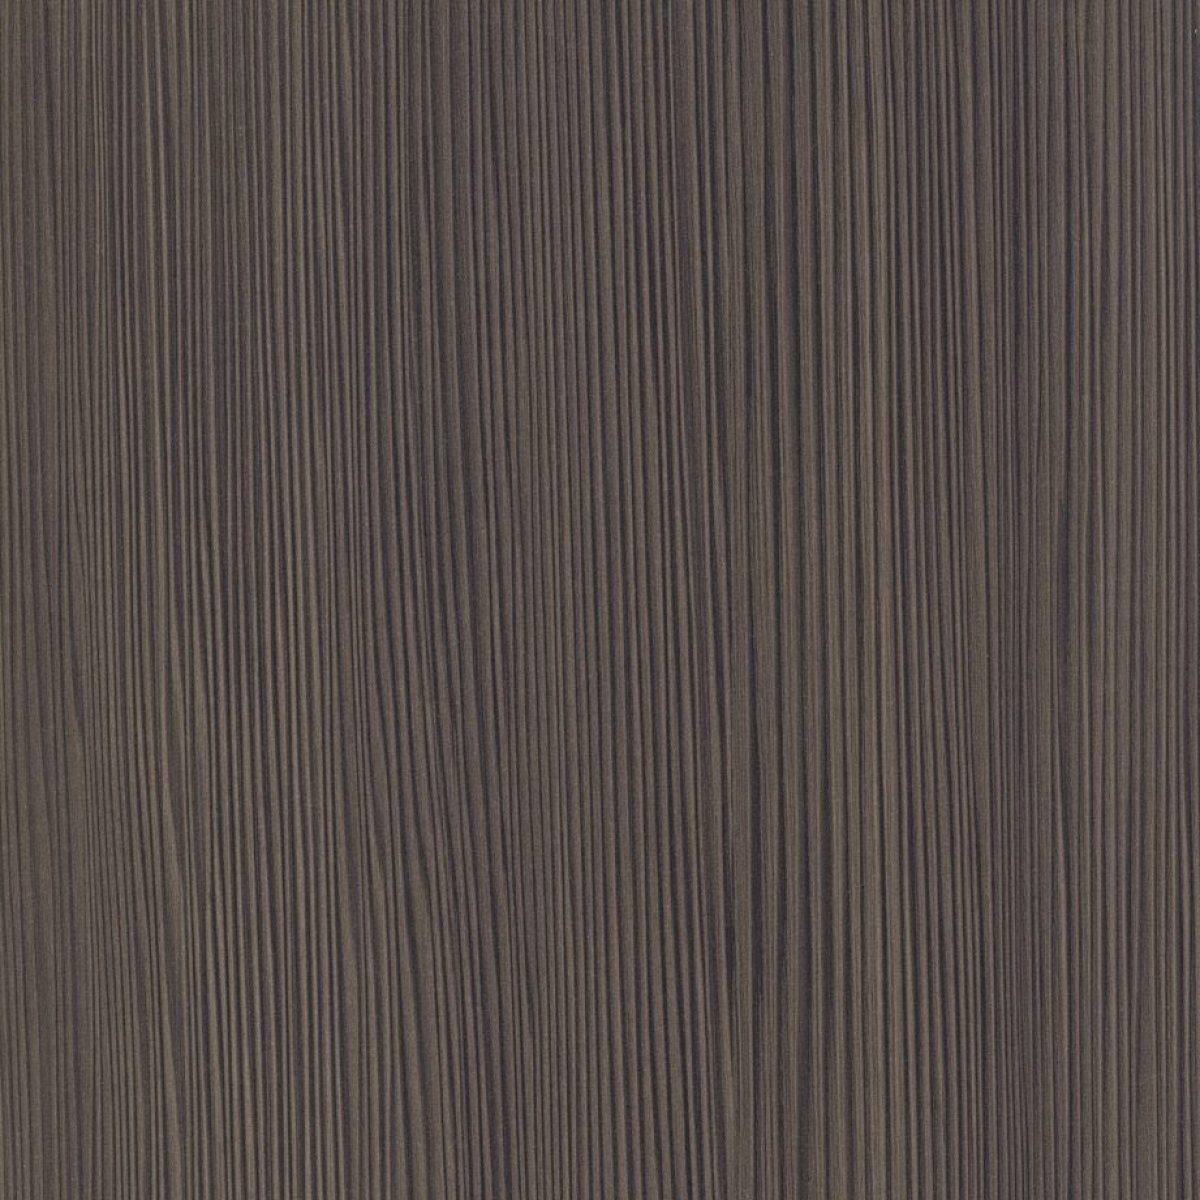 GREY CEDAR - Tamaños (1,22 x 2,44m)  |  Espesor (0.7mm)